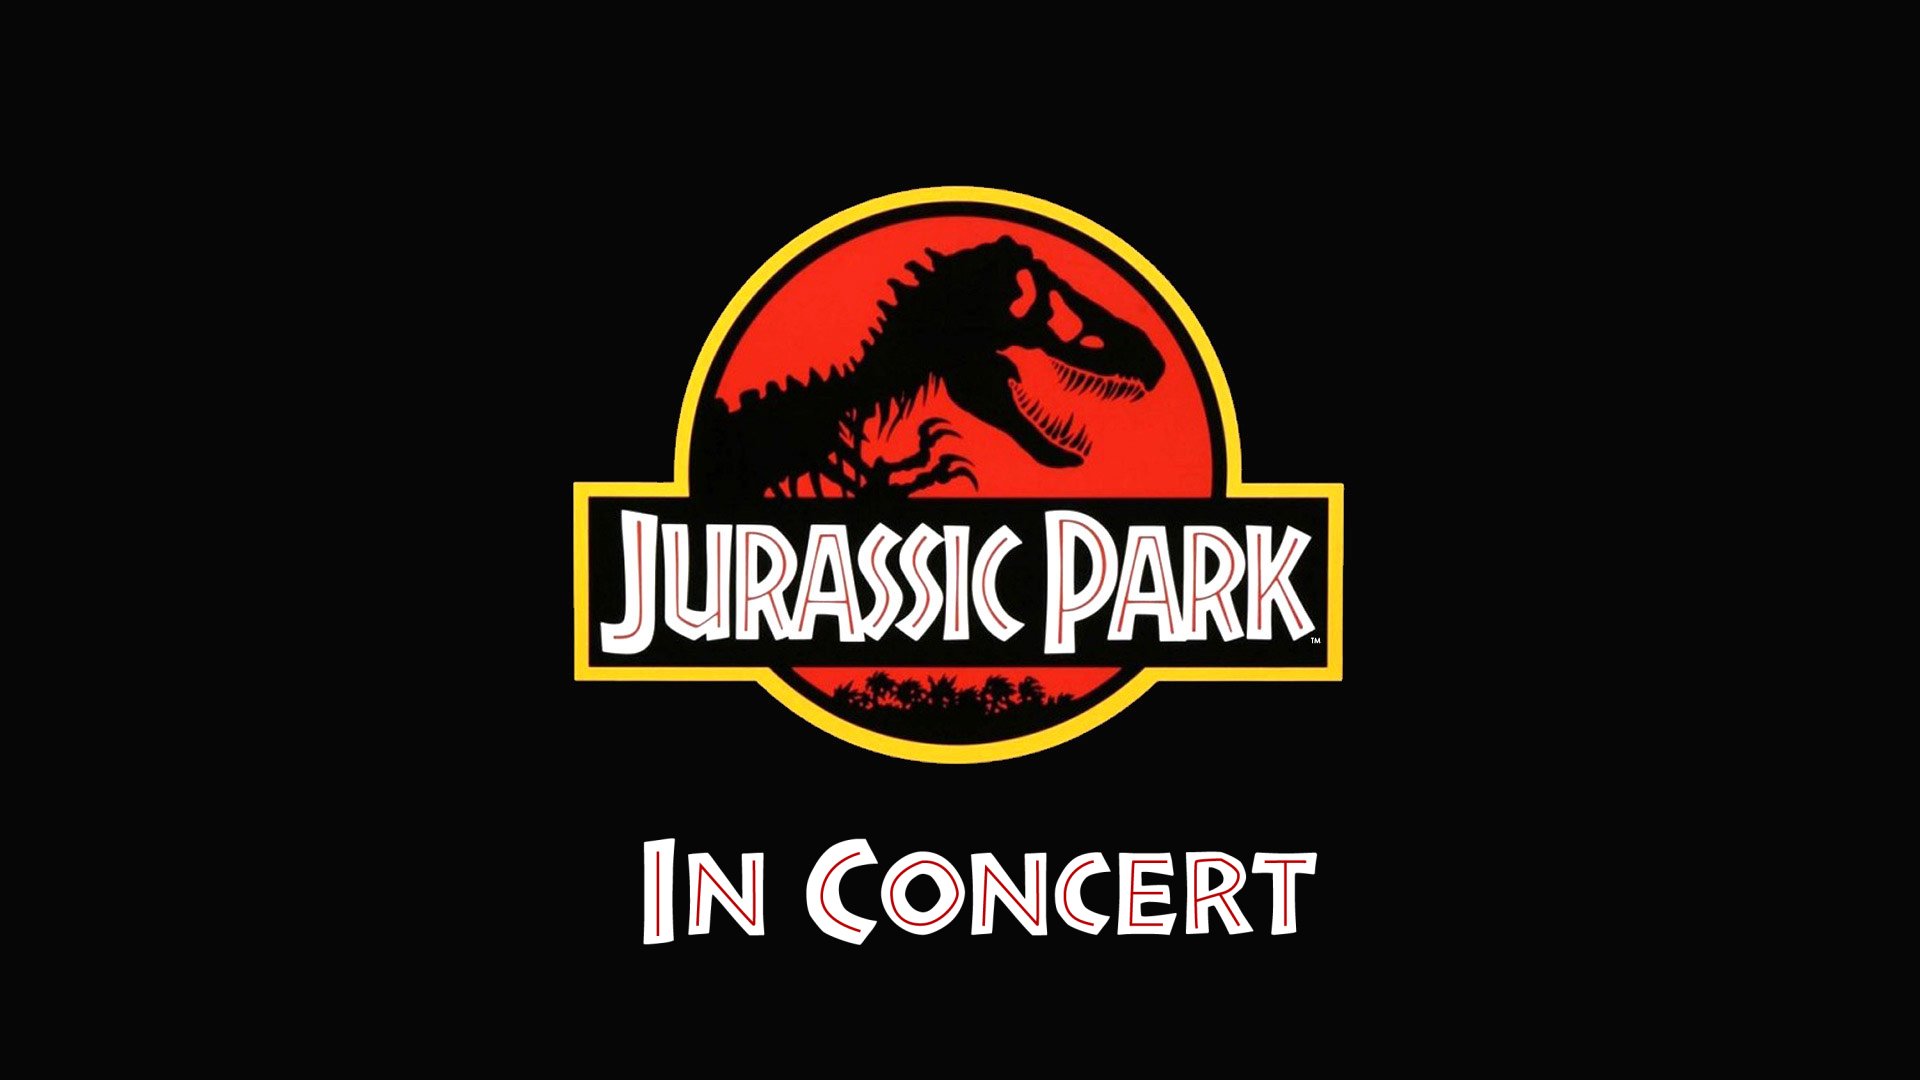 JurassicPark_InConcert_v2.jpg